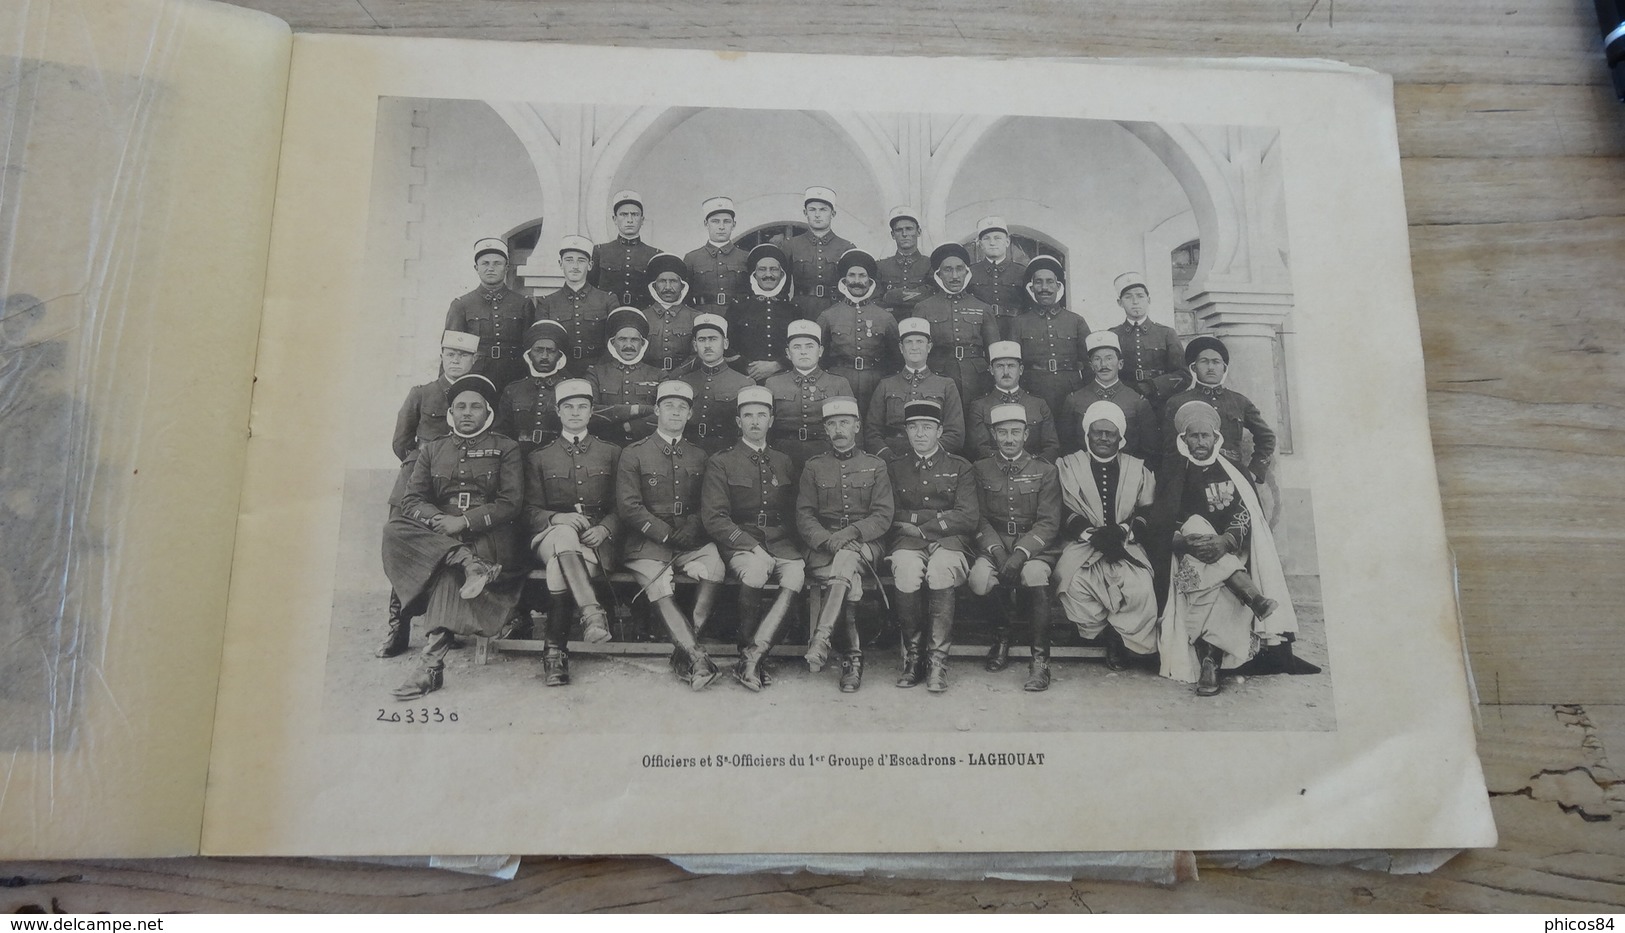 Livret  du 1er régiment de SPAHIS ALGERIENS, Médéa - 1932